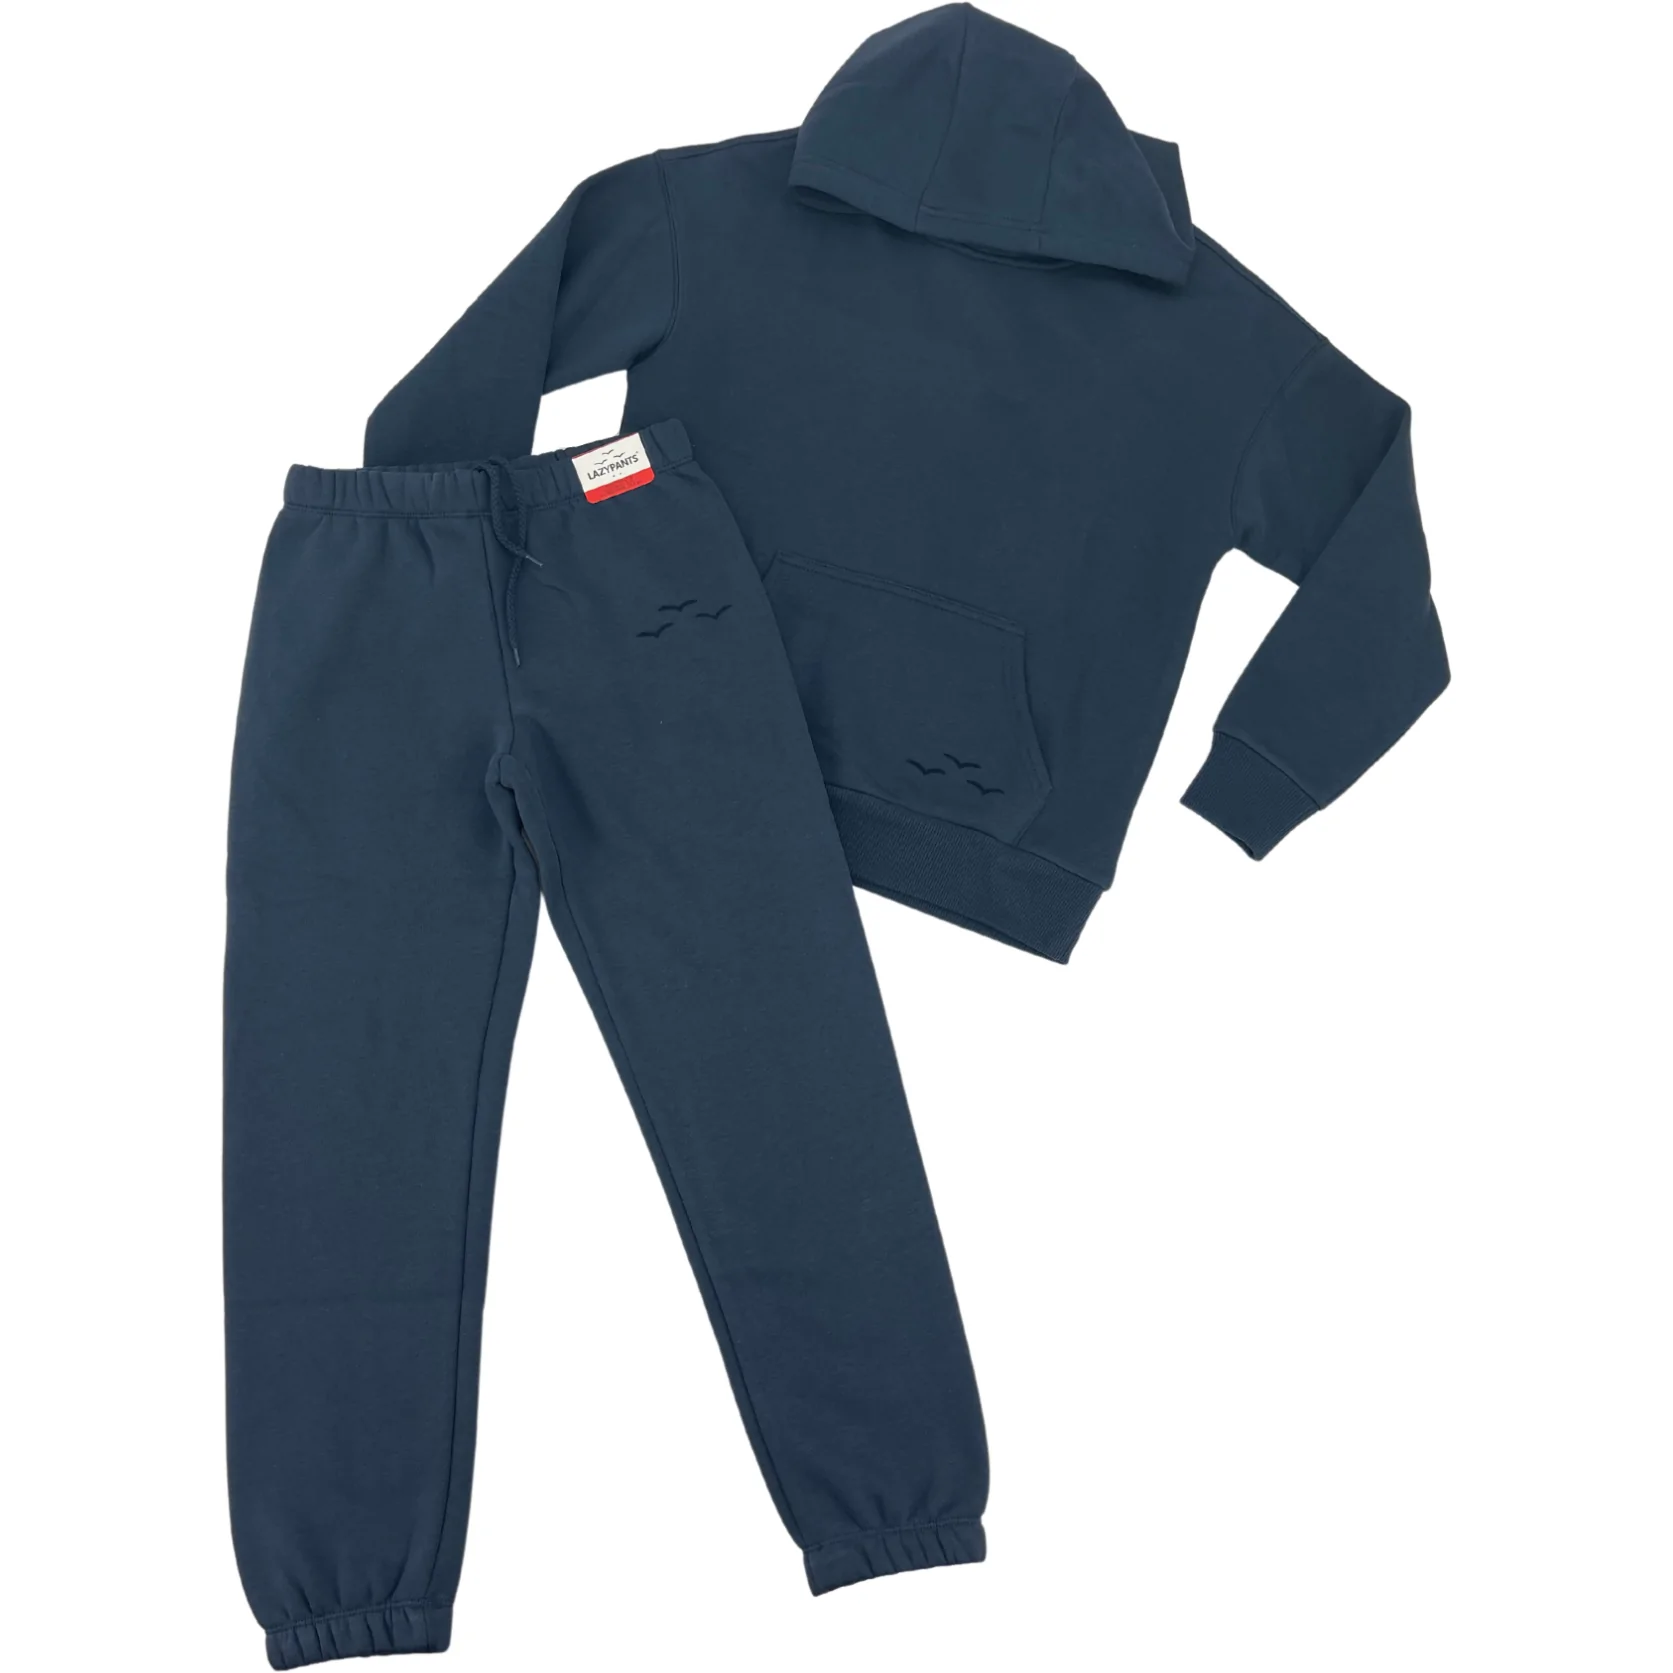 Lazy Pants Children's TrackSuit Set: Sweatpants & Sweatshirt / Navy / Various Sizes